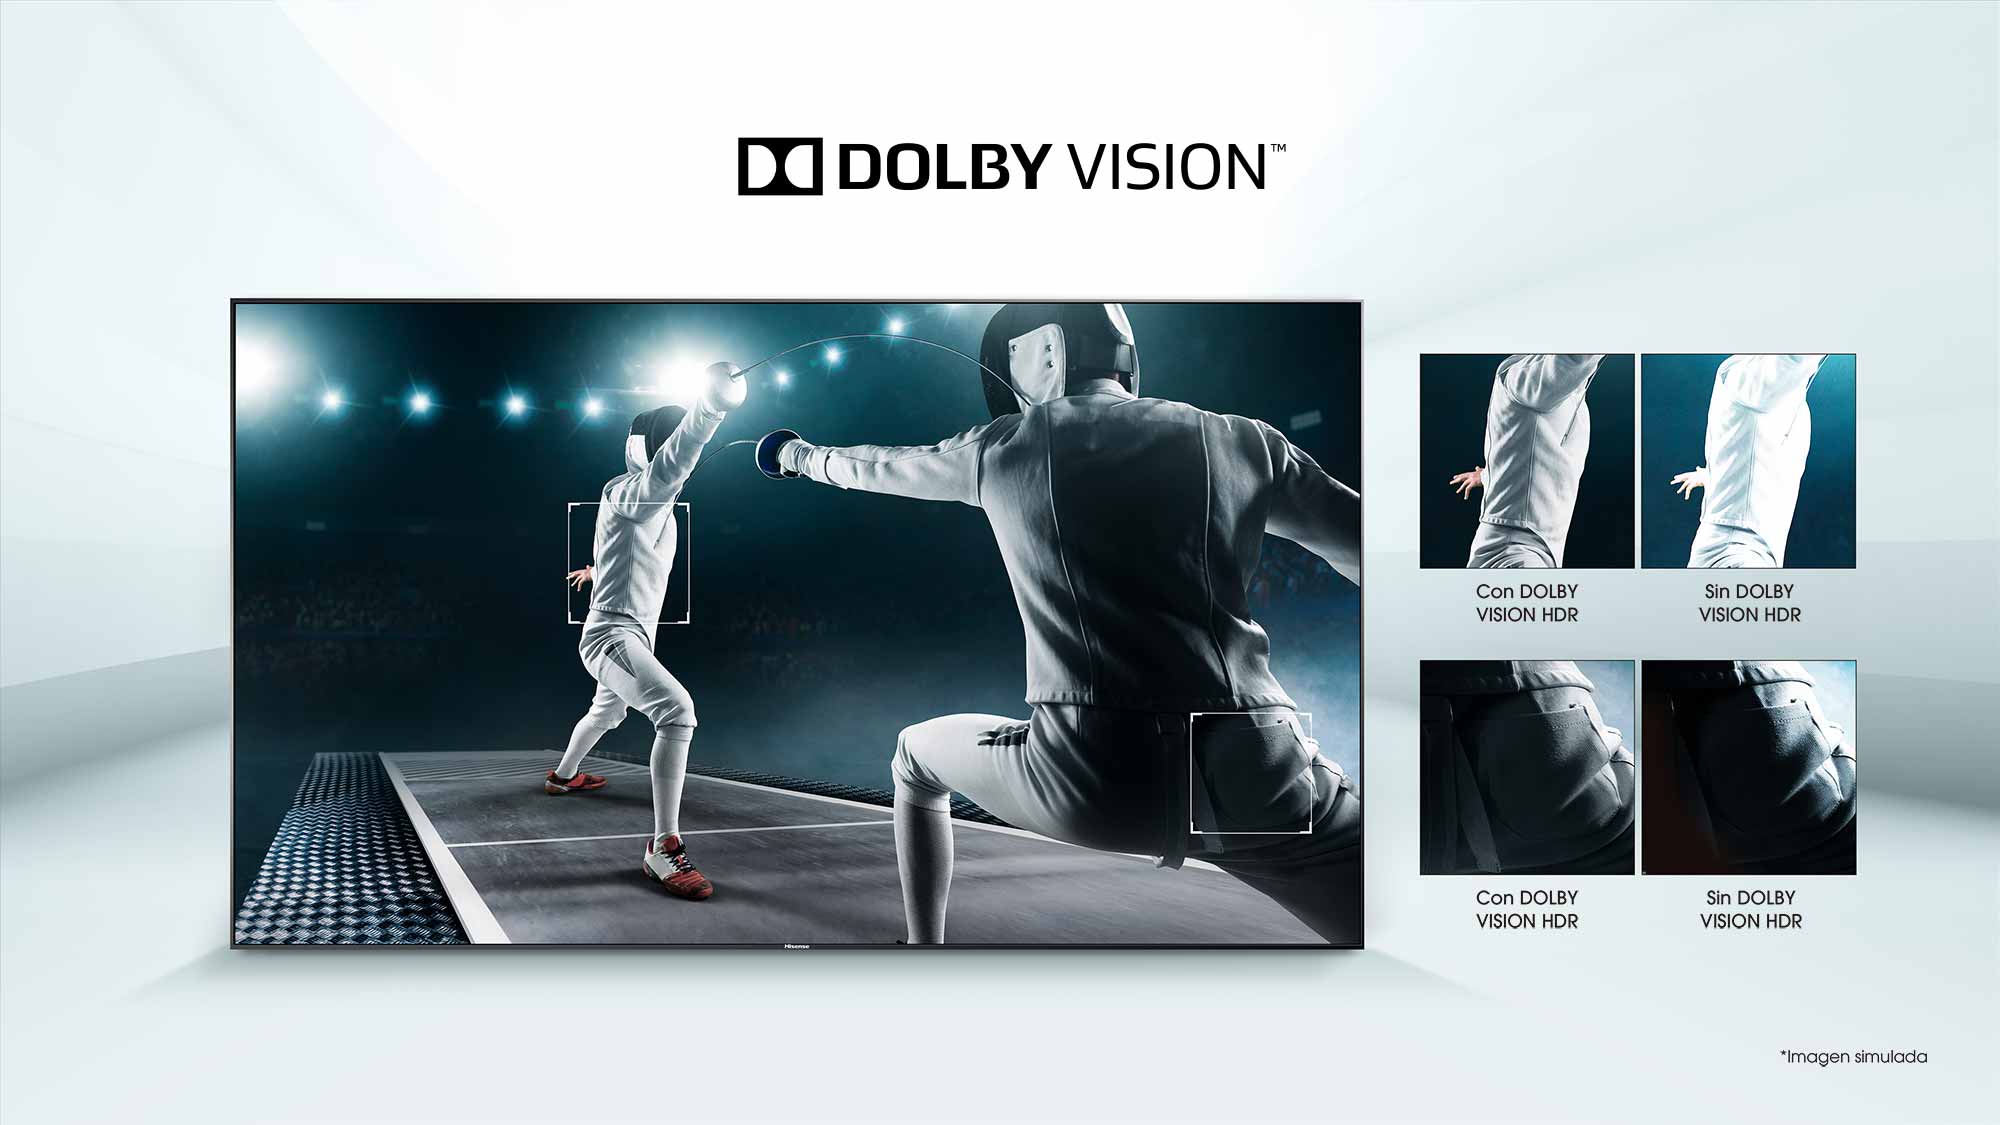 ULED TV Dolby Vision Hisense